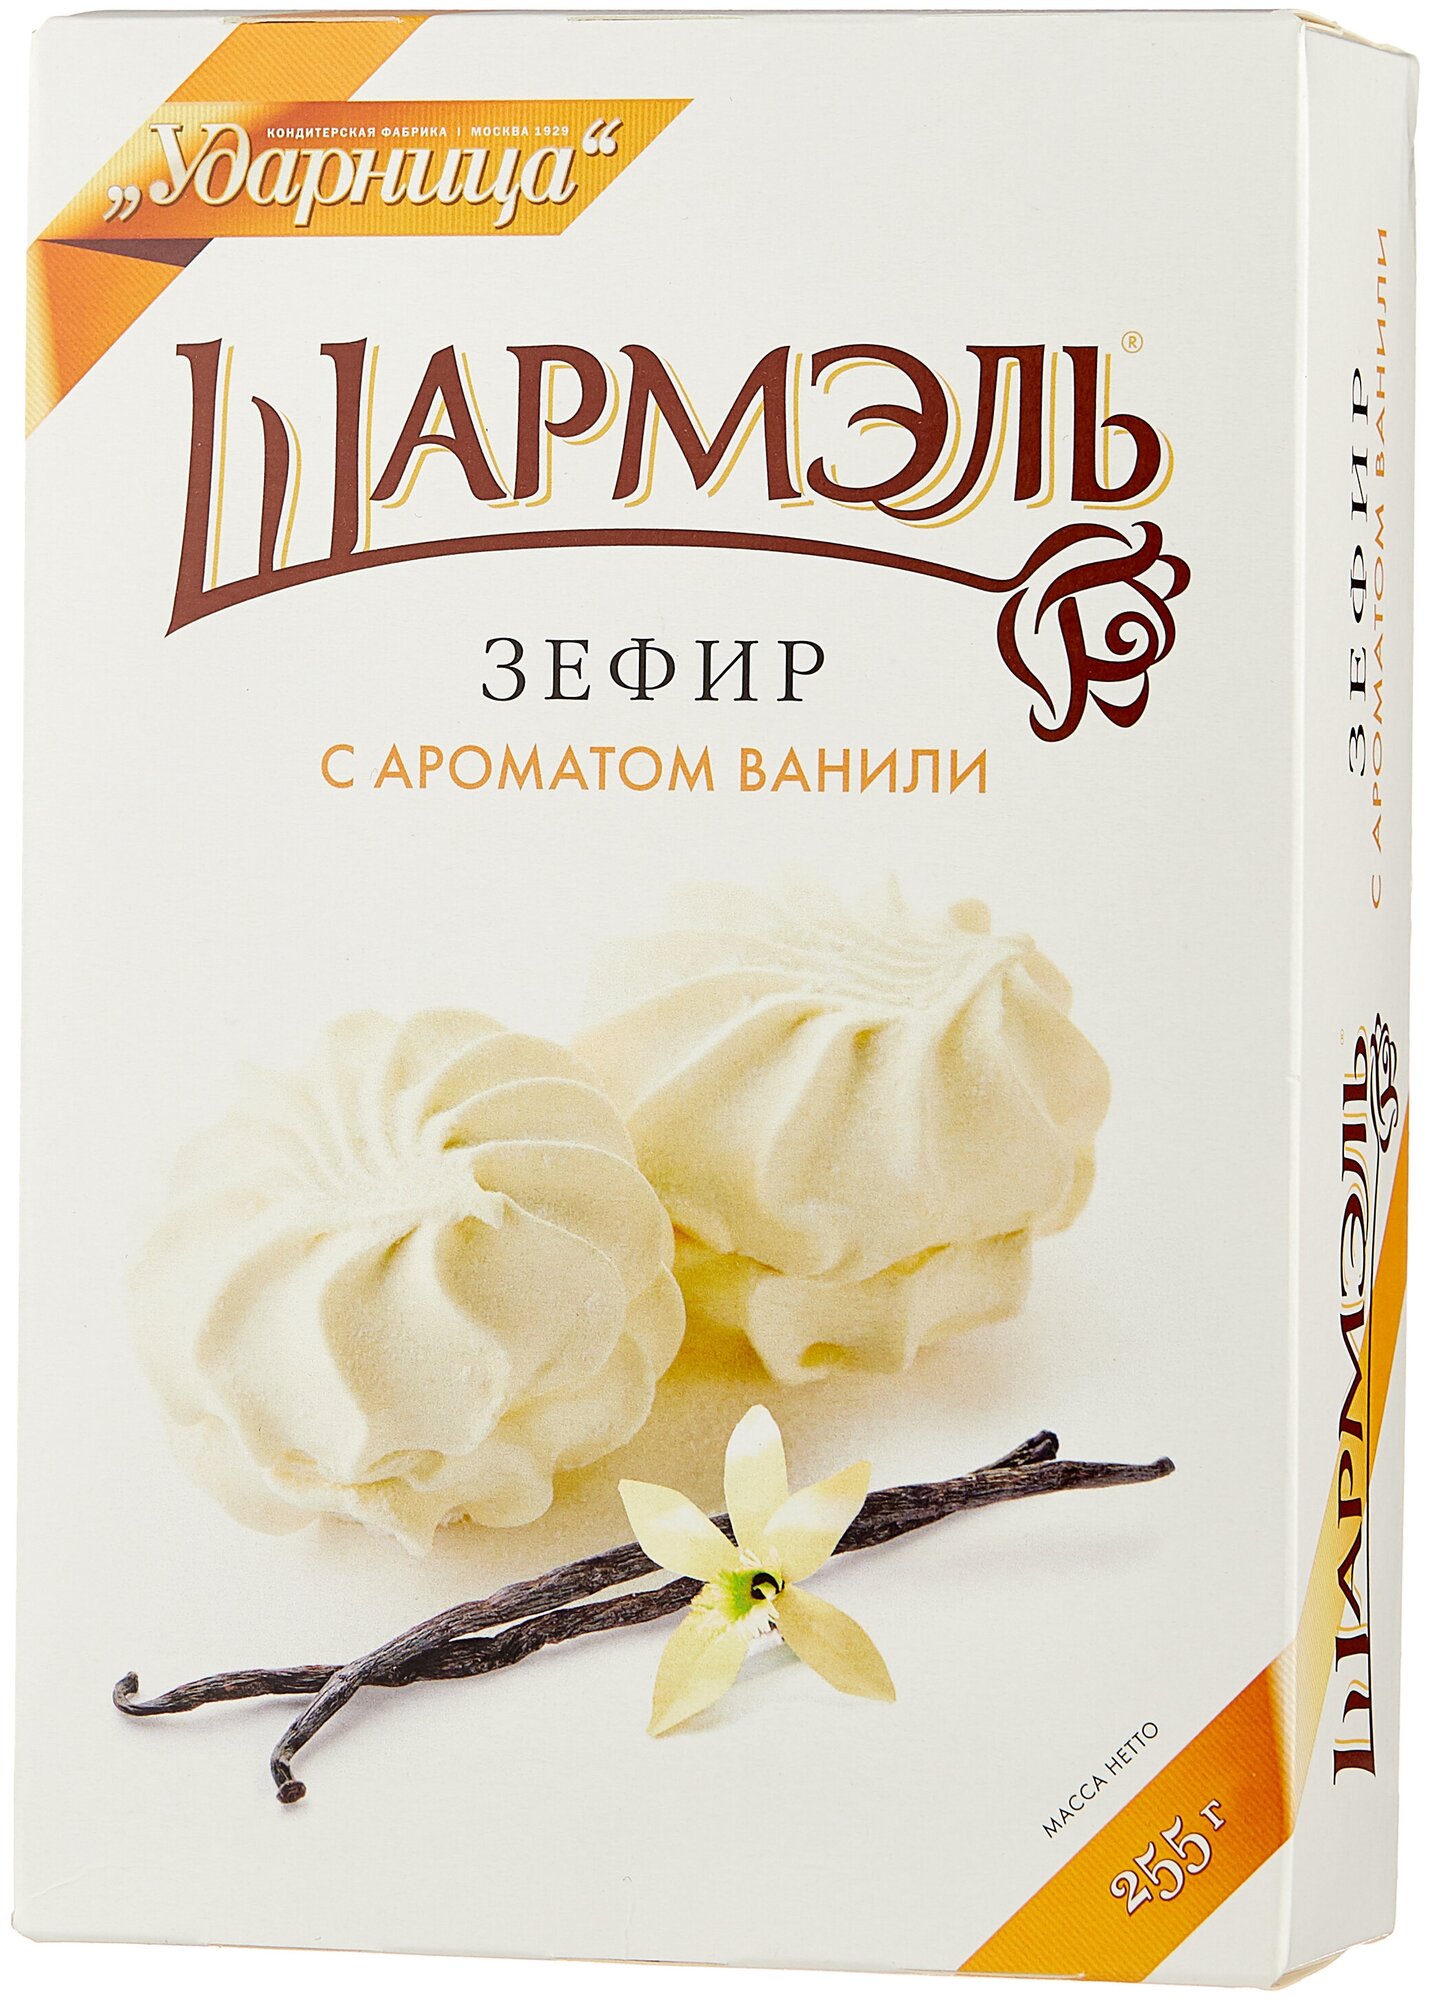 Зефир Шармэль с ароматом ванили